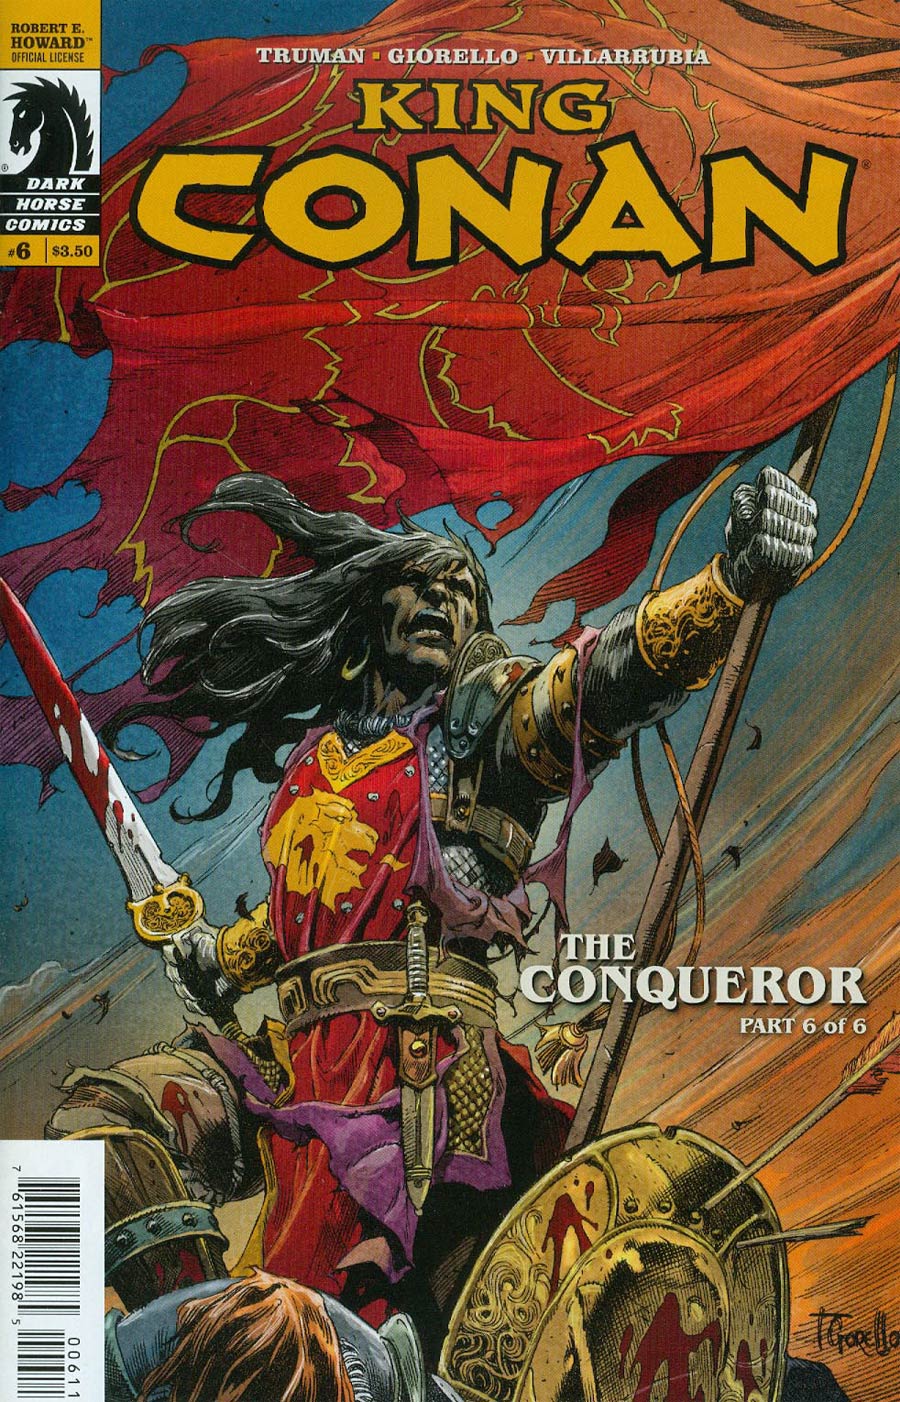 King Conan The Conqueror #6